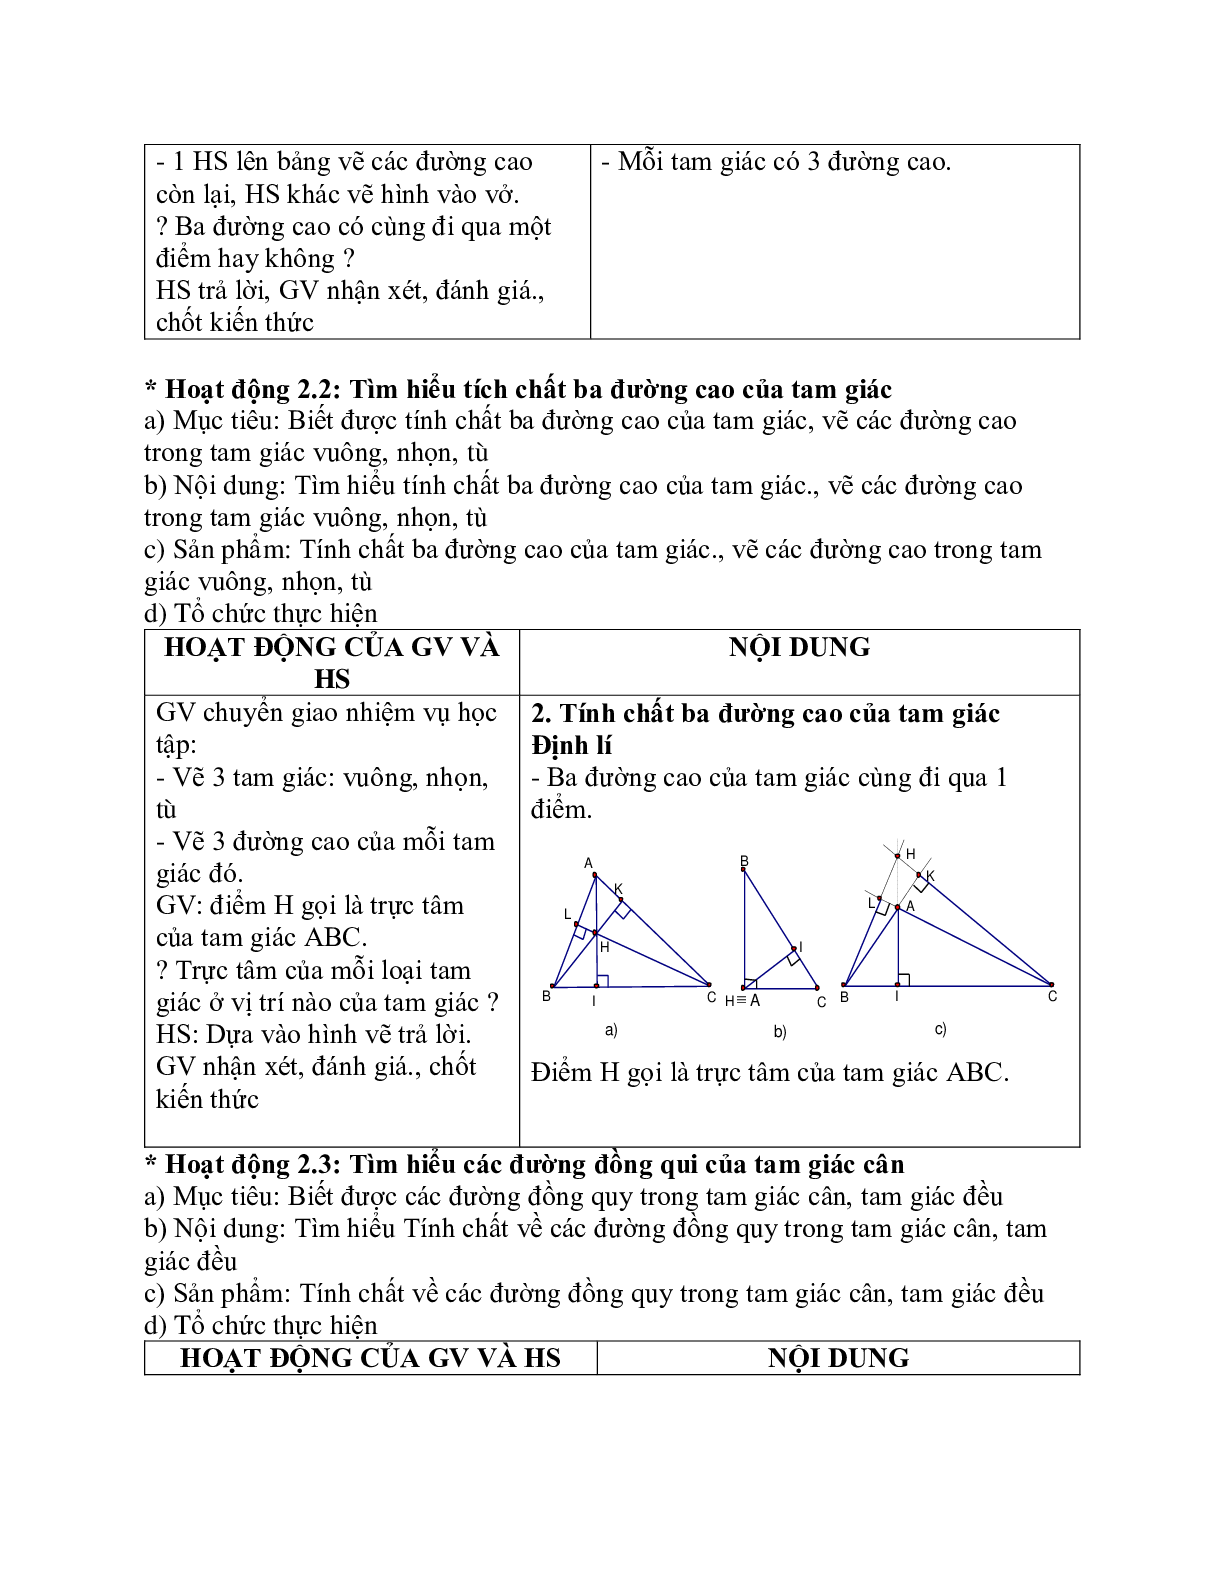 Giáo án Toán học 7 bài 9: Tính chất ba đường cao của tam giác chuẩn nhất (trang 2)